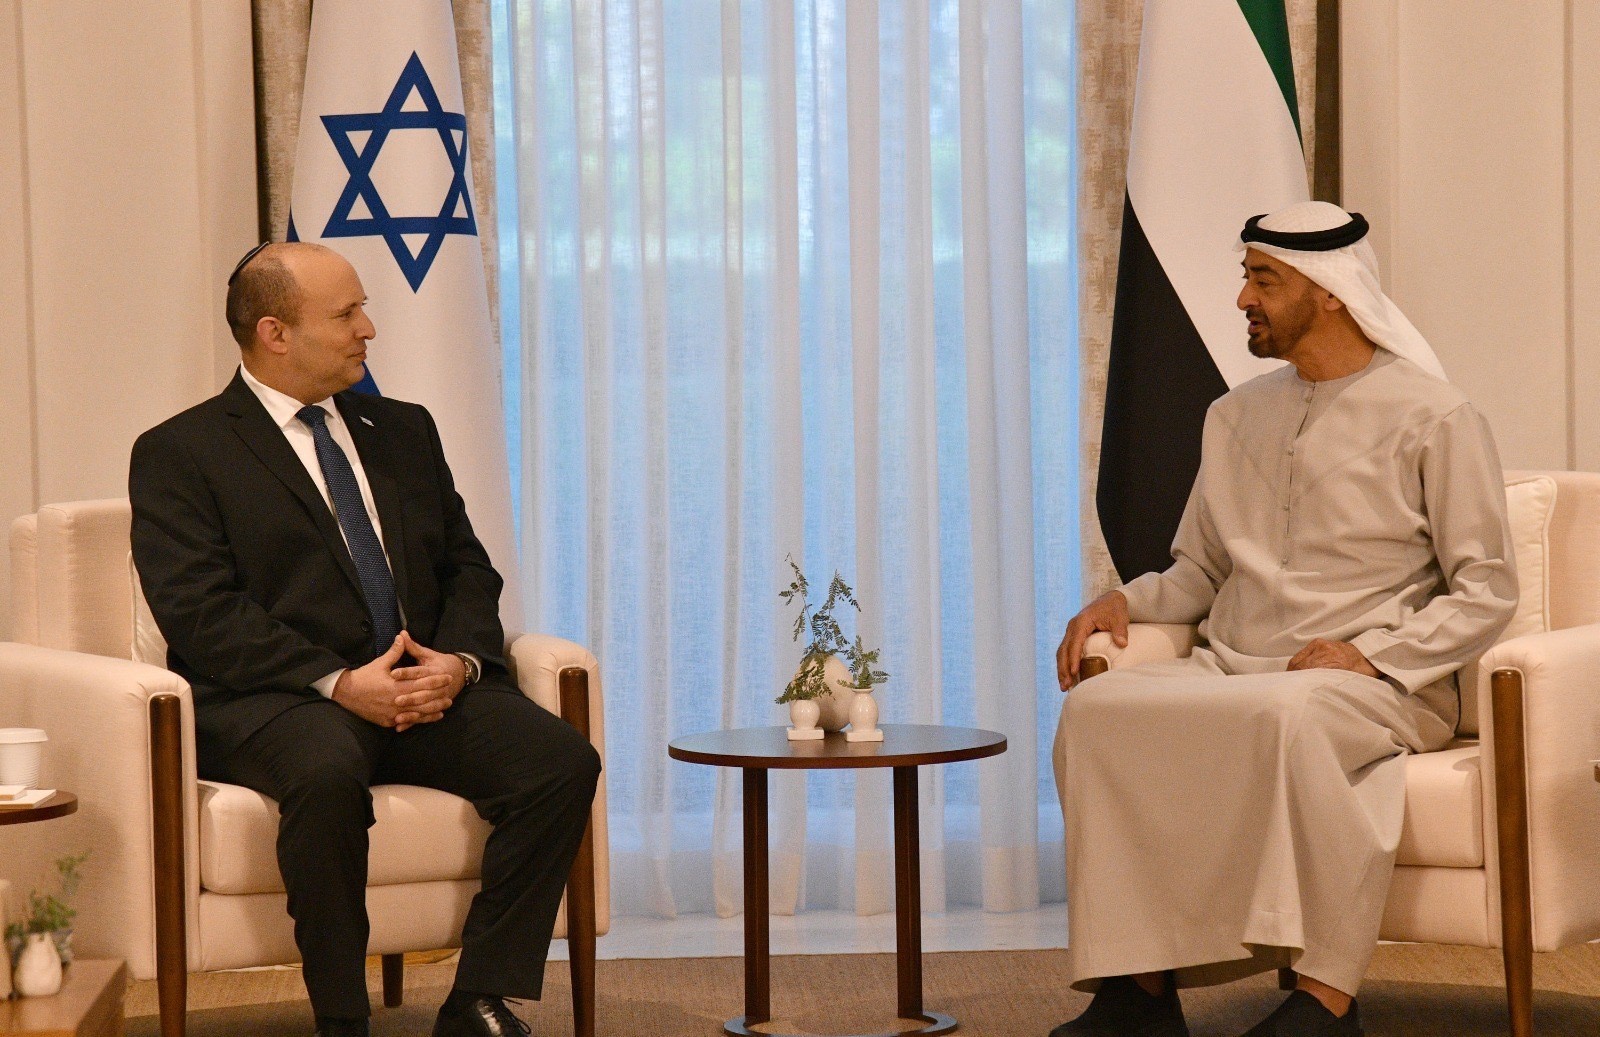 Le Premier Ministre Le Prince Héritier Israélien Attaques Des Houthis Contre Émirats Arabes Unis